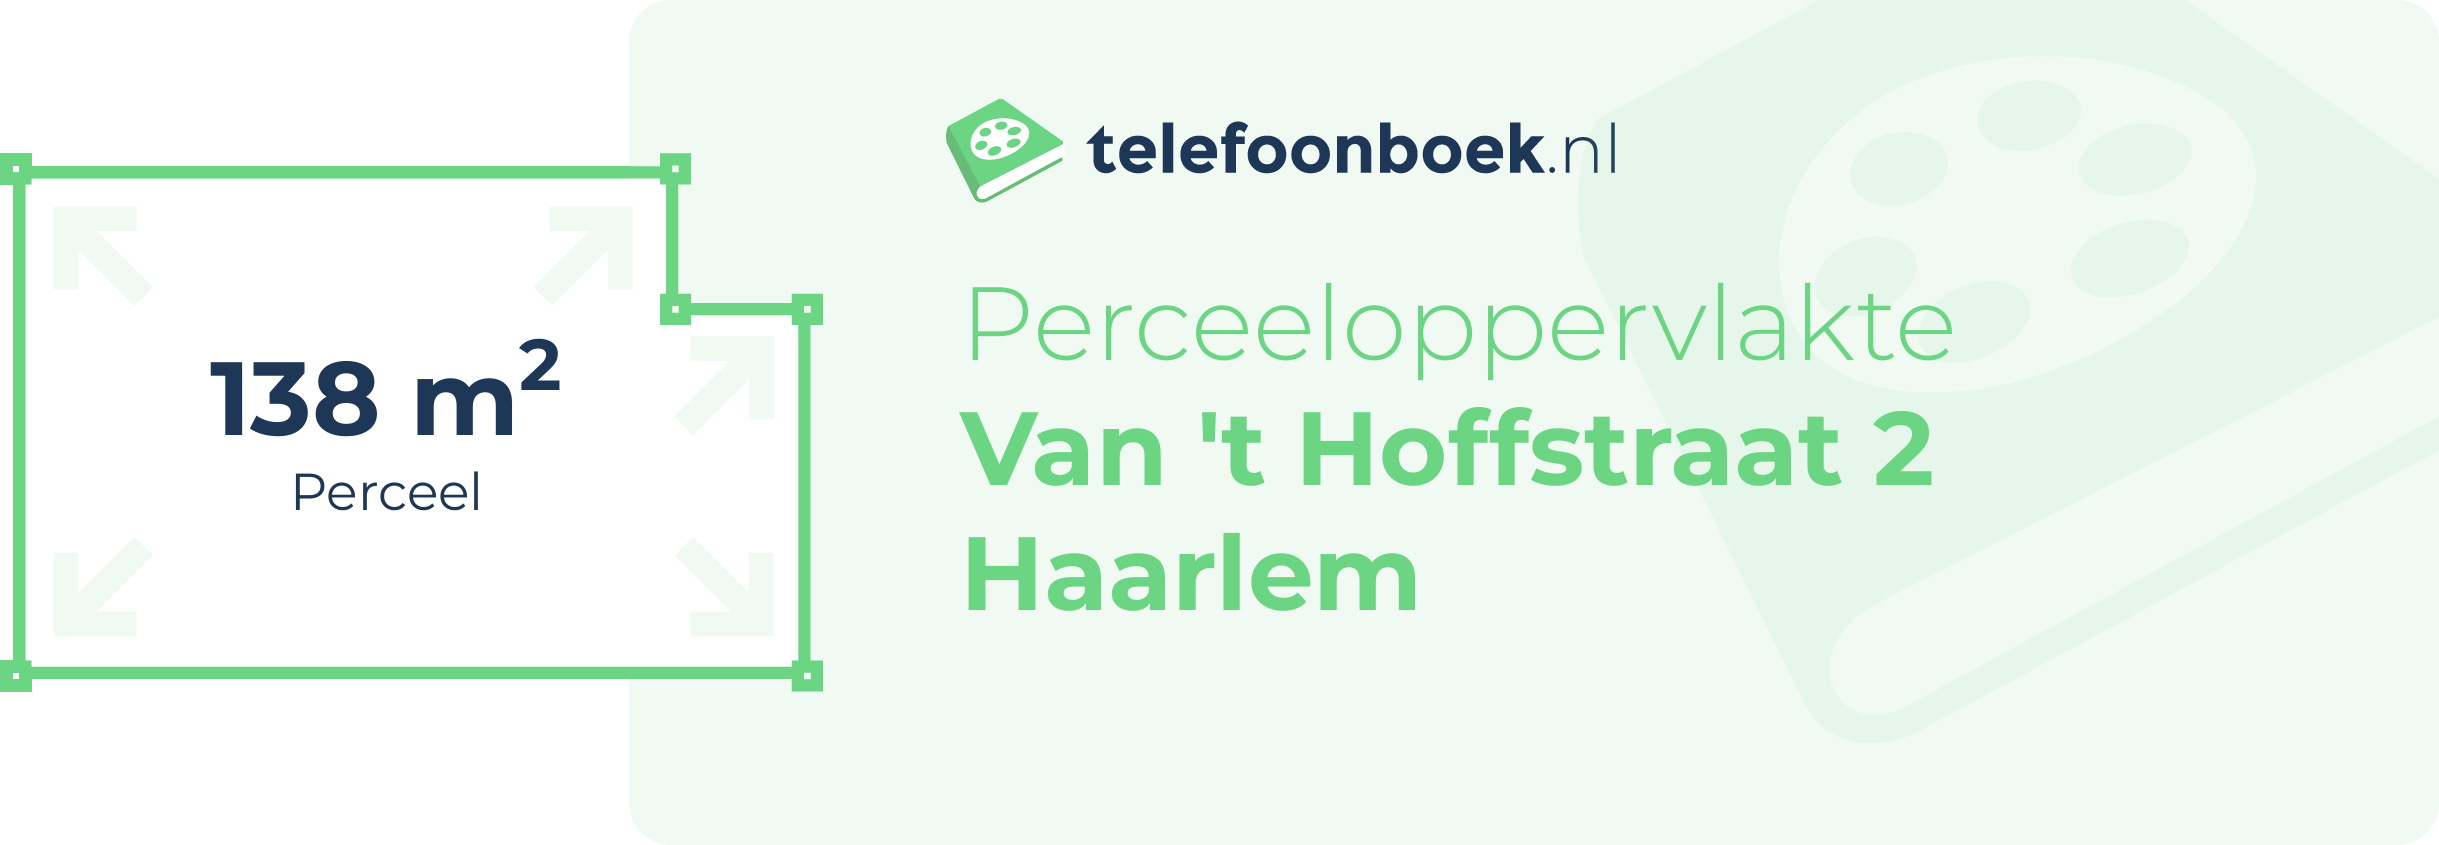 Perceeloppervlakte Van 't Hoffstraat 2 Haarlem